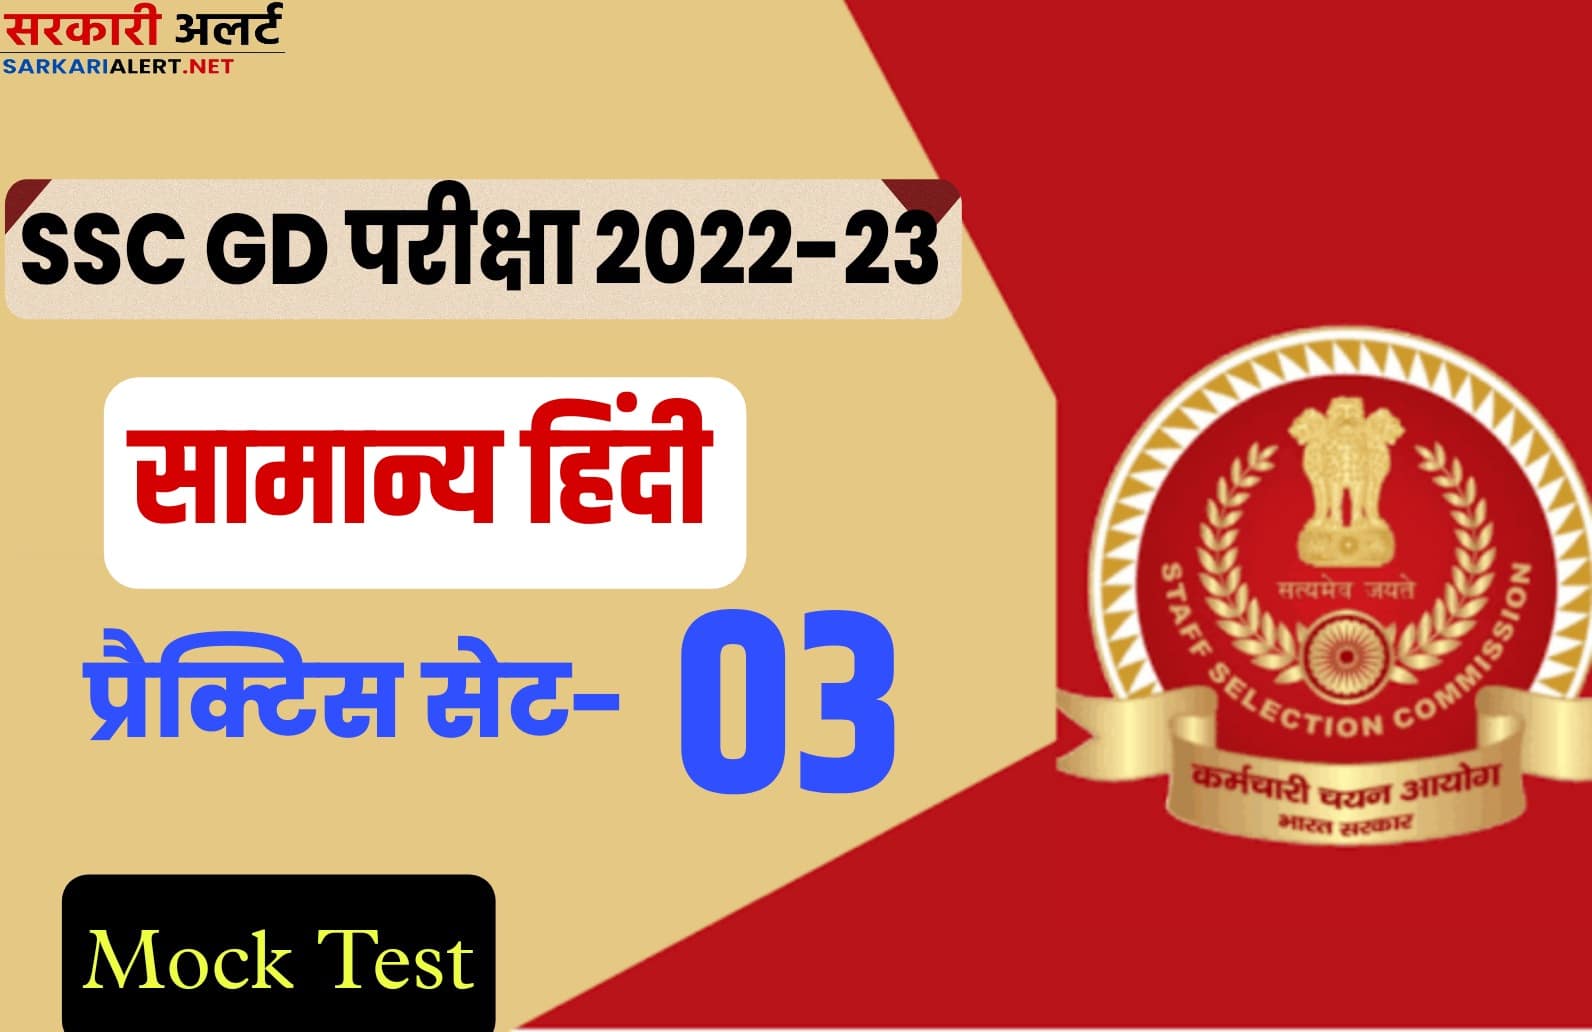 SSC GD Hindi Practice Set 03 : एसएससी जीडी की परीक्षा से पहले मुख्य प्रश्नों का संग्रह जरूर पढ़ें